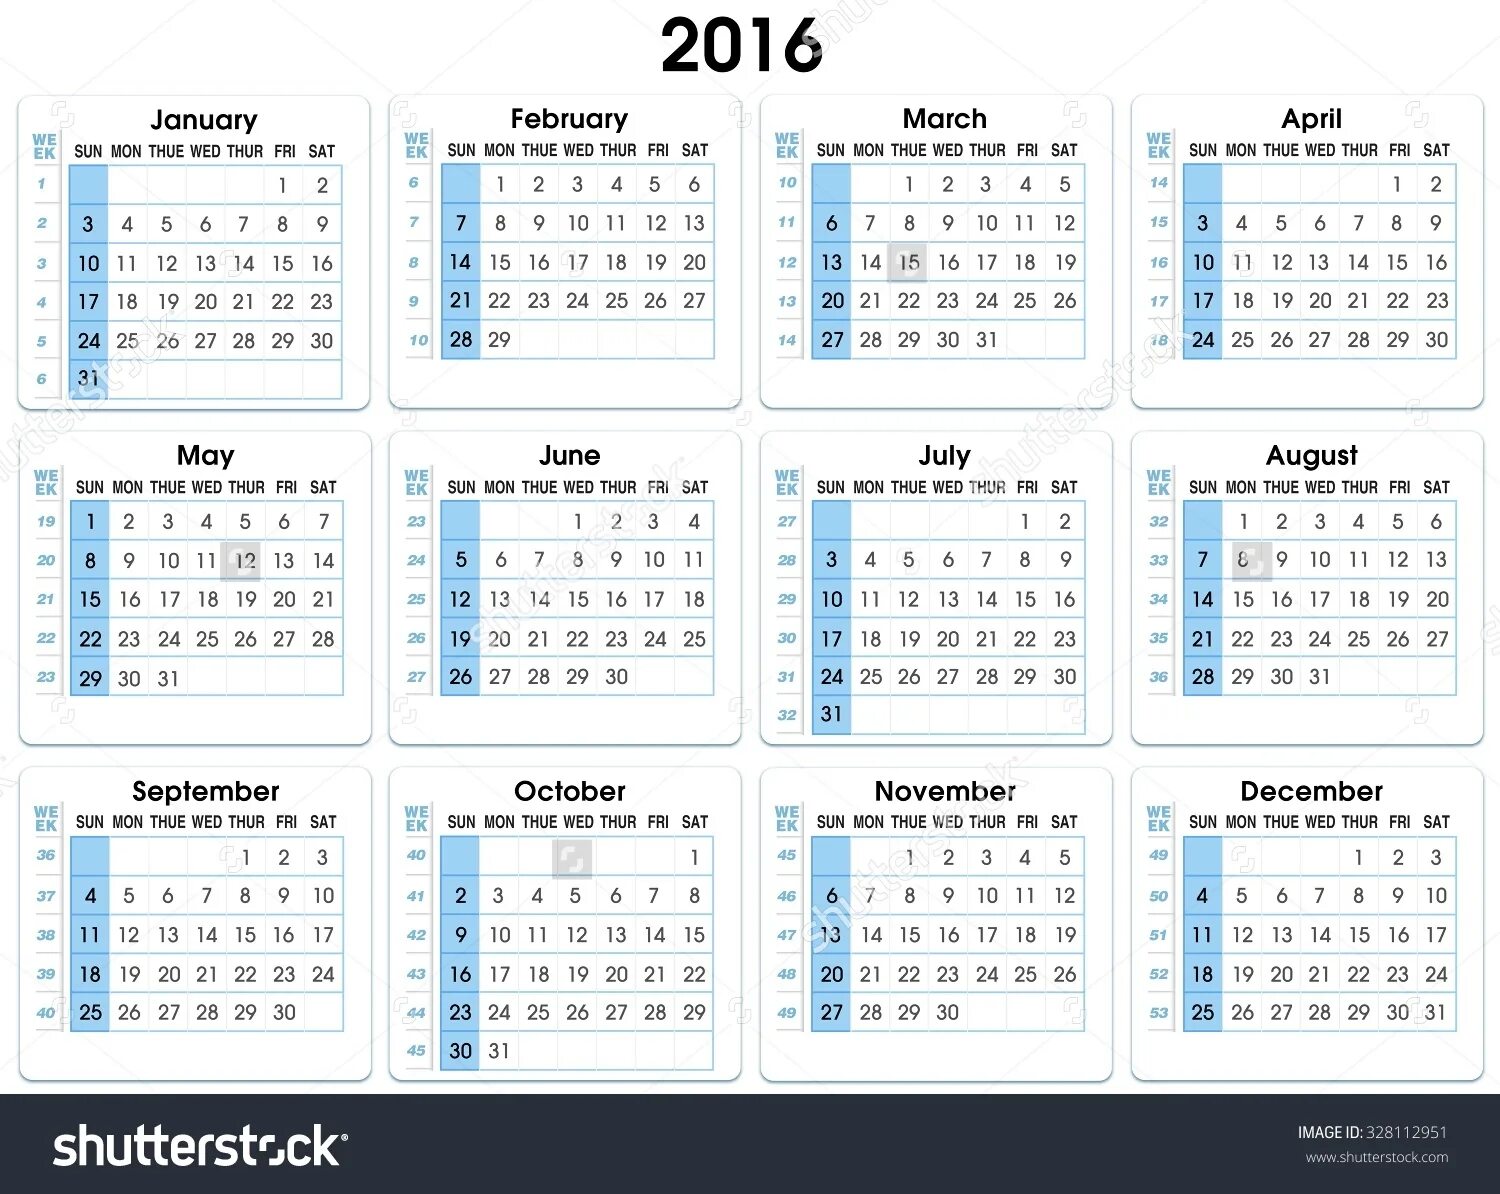 2016 Год календарь с неделями. Календарь 2016 года с номерами недель. Номера недель в 2016. Календарь с нумерацией недель.